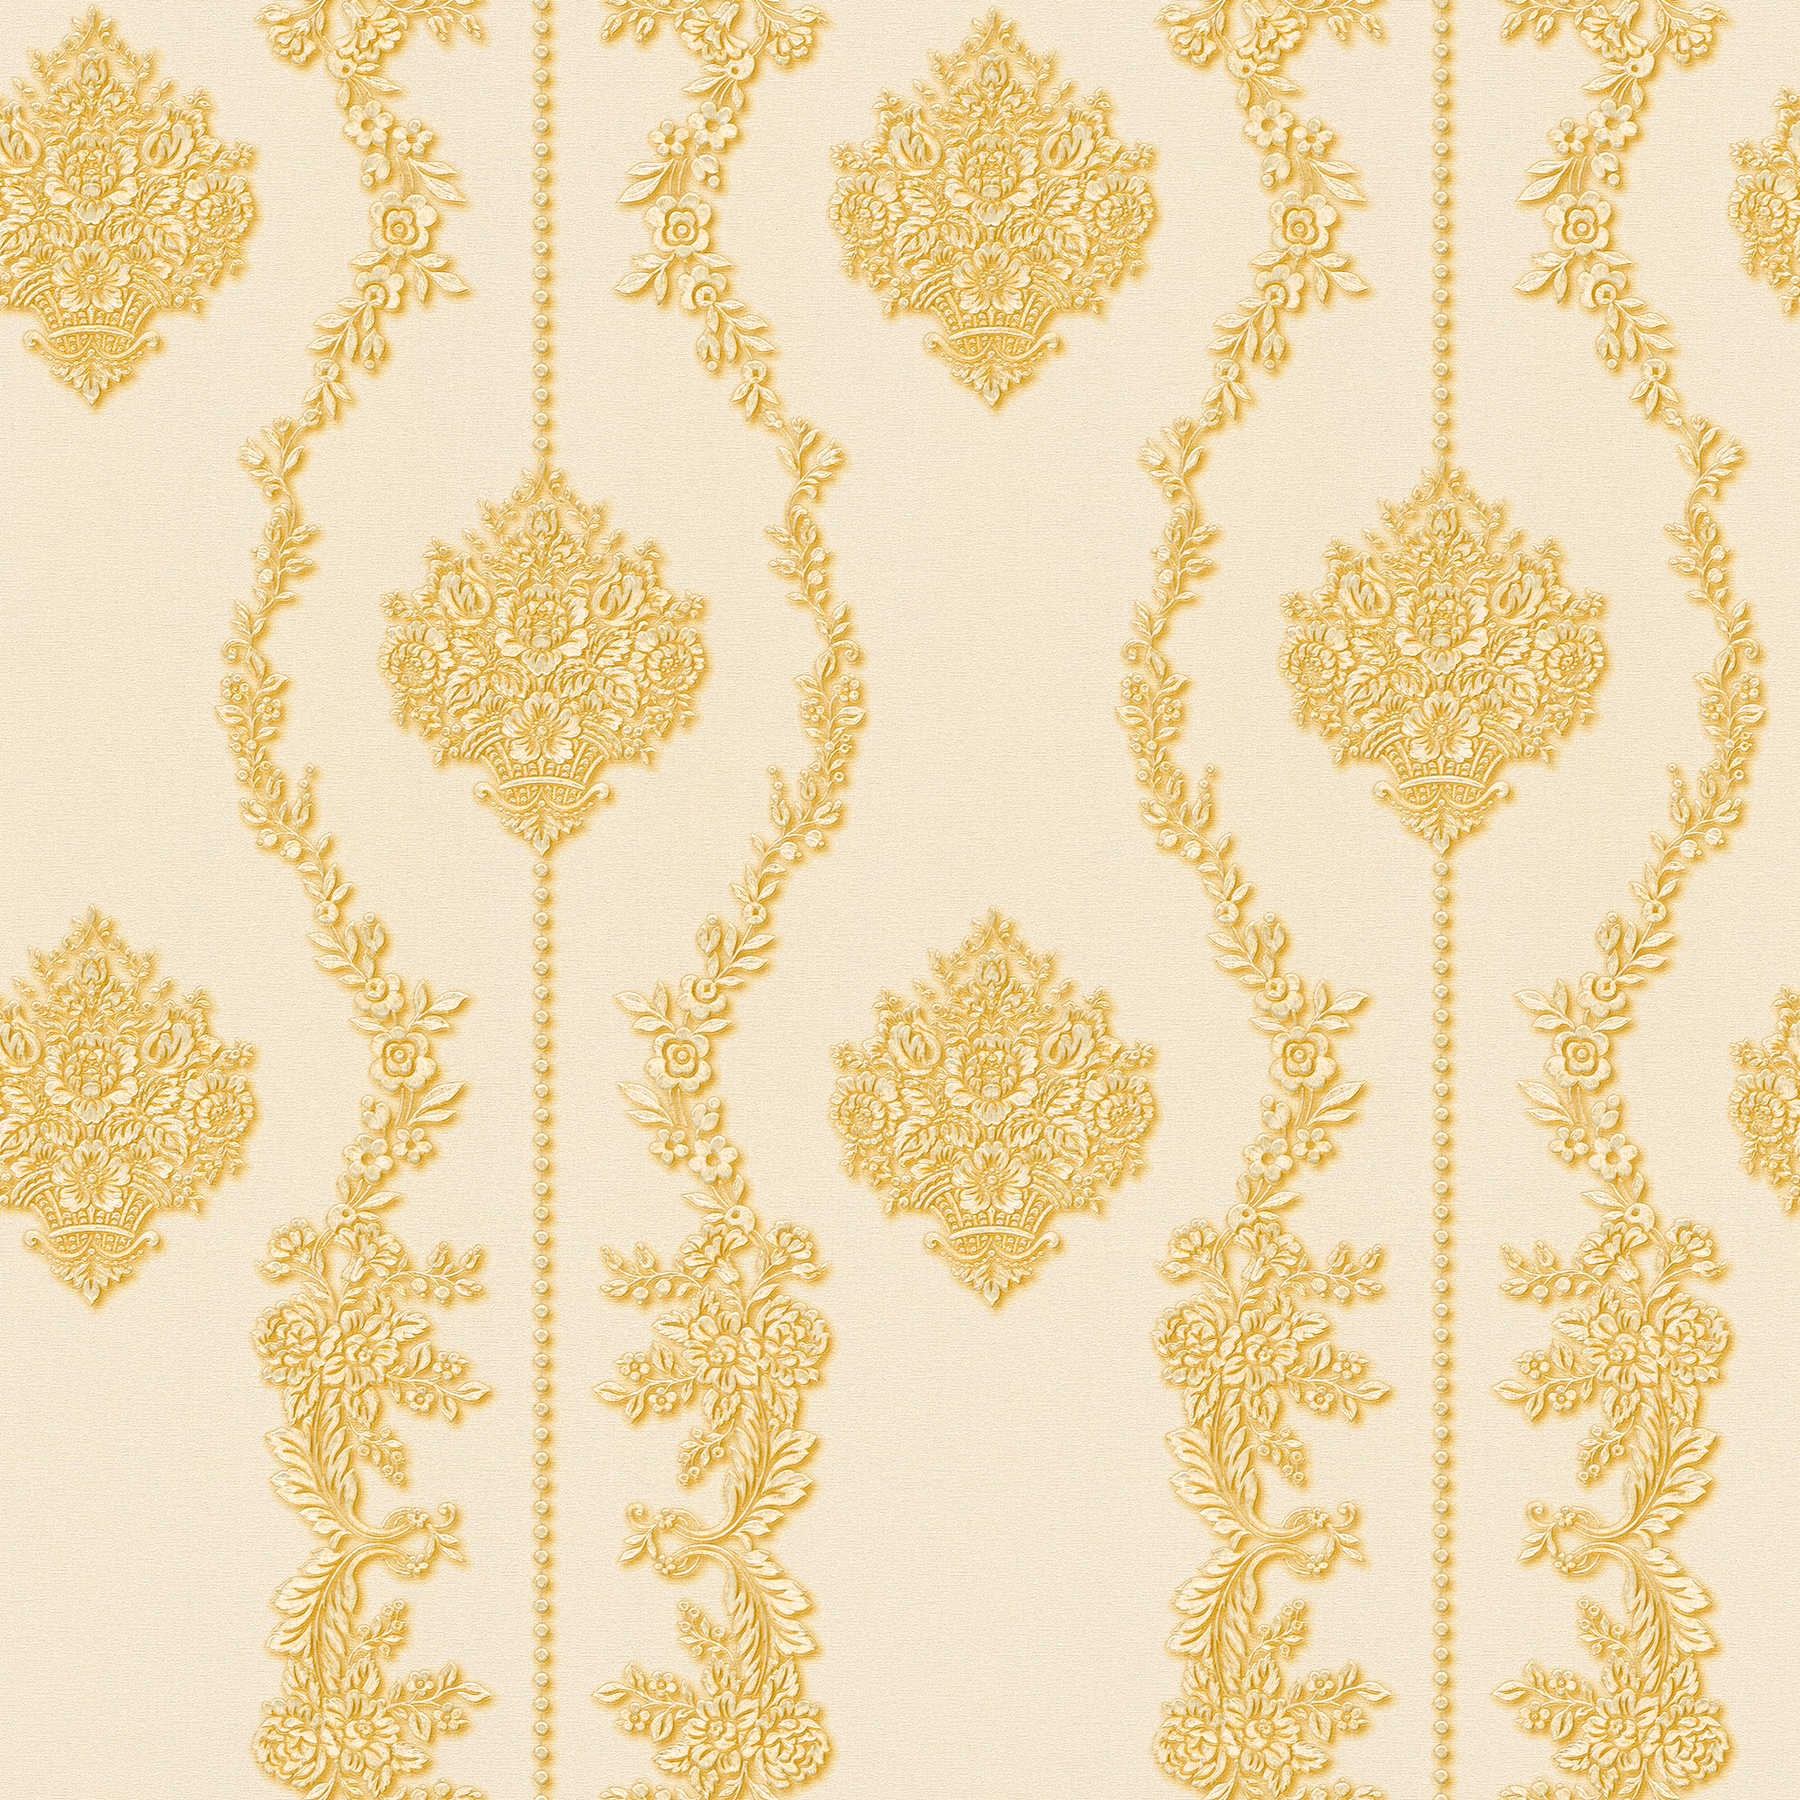 Ornamenteel behang met bloemenpatroon & ranken - crème, goud
